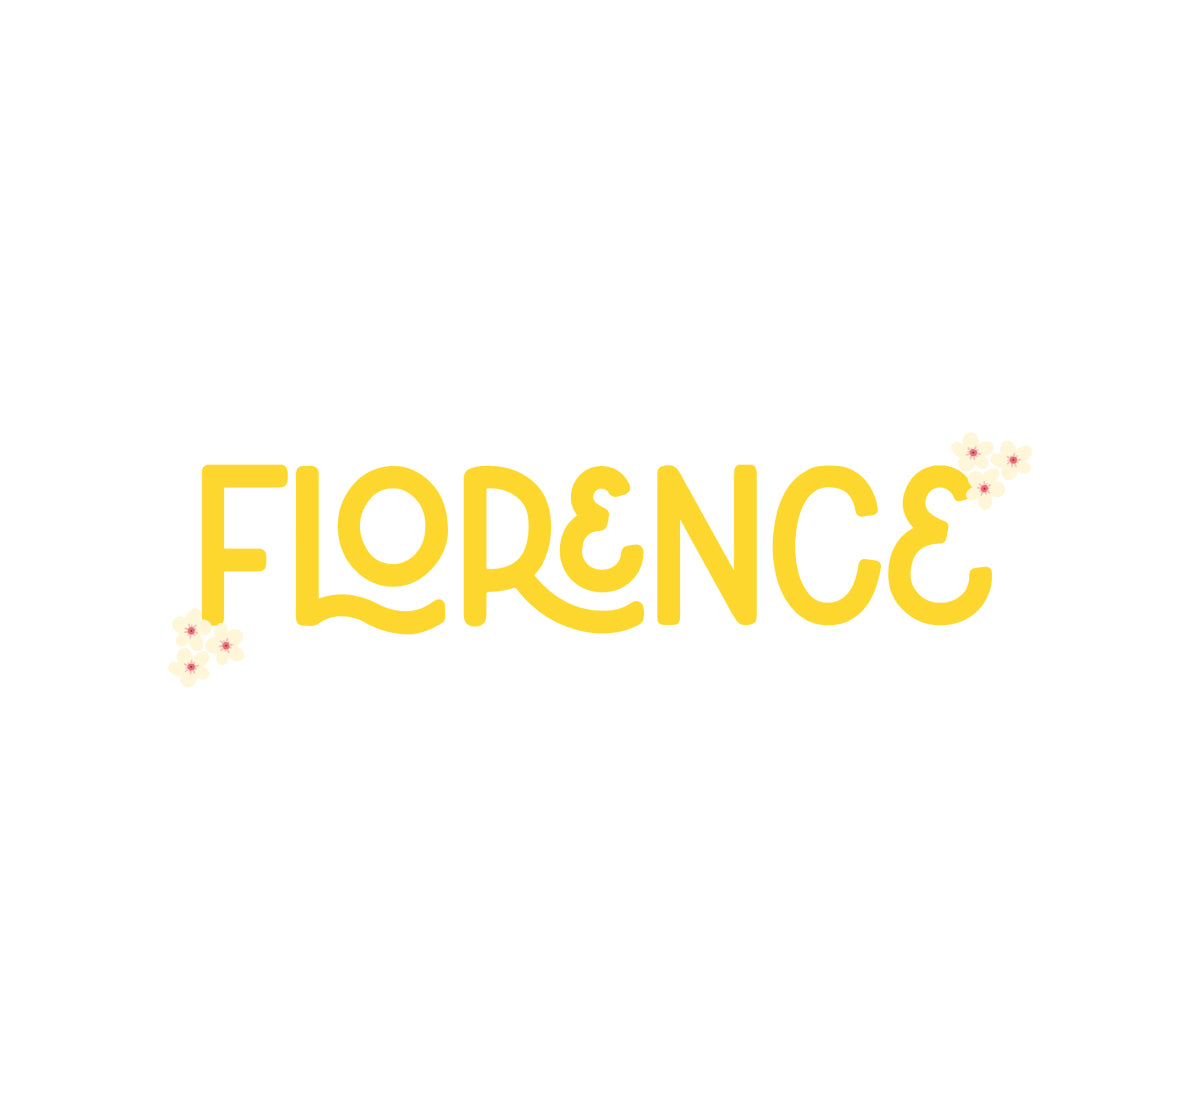 Florence dog bandana